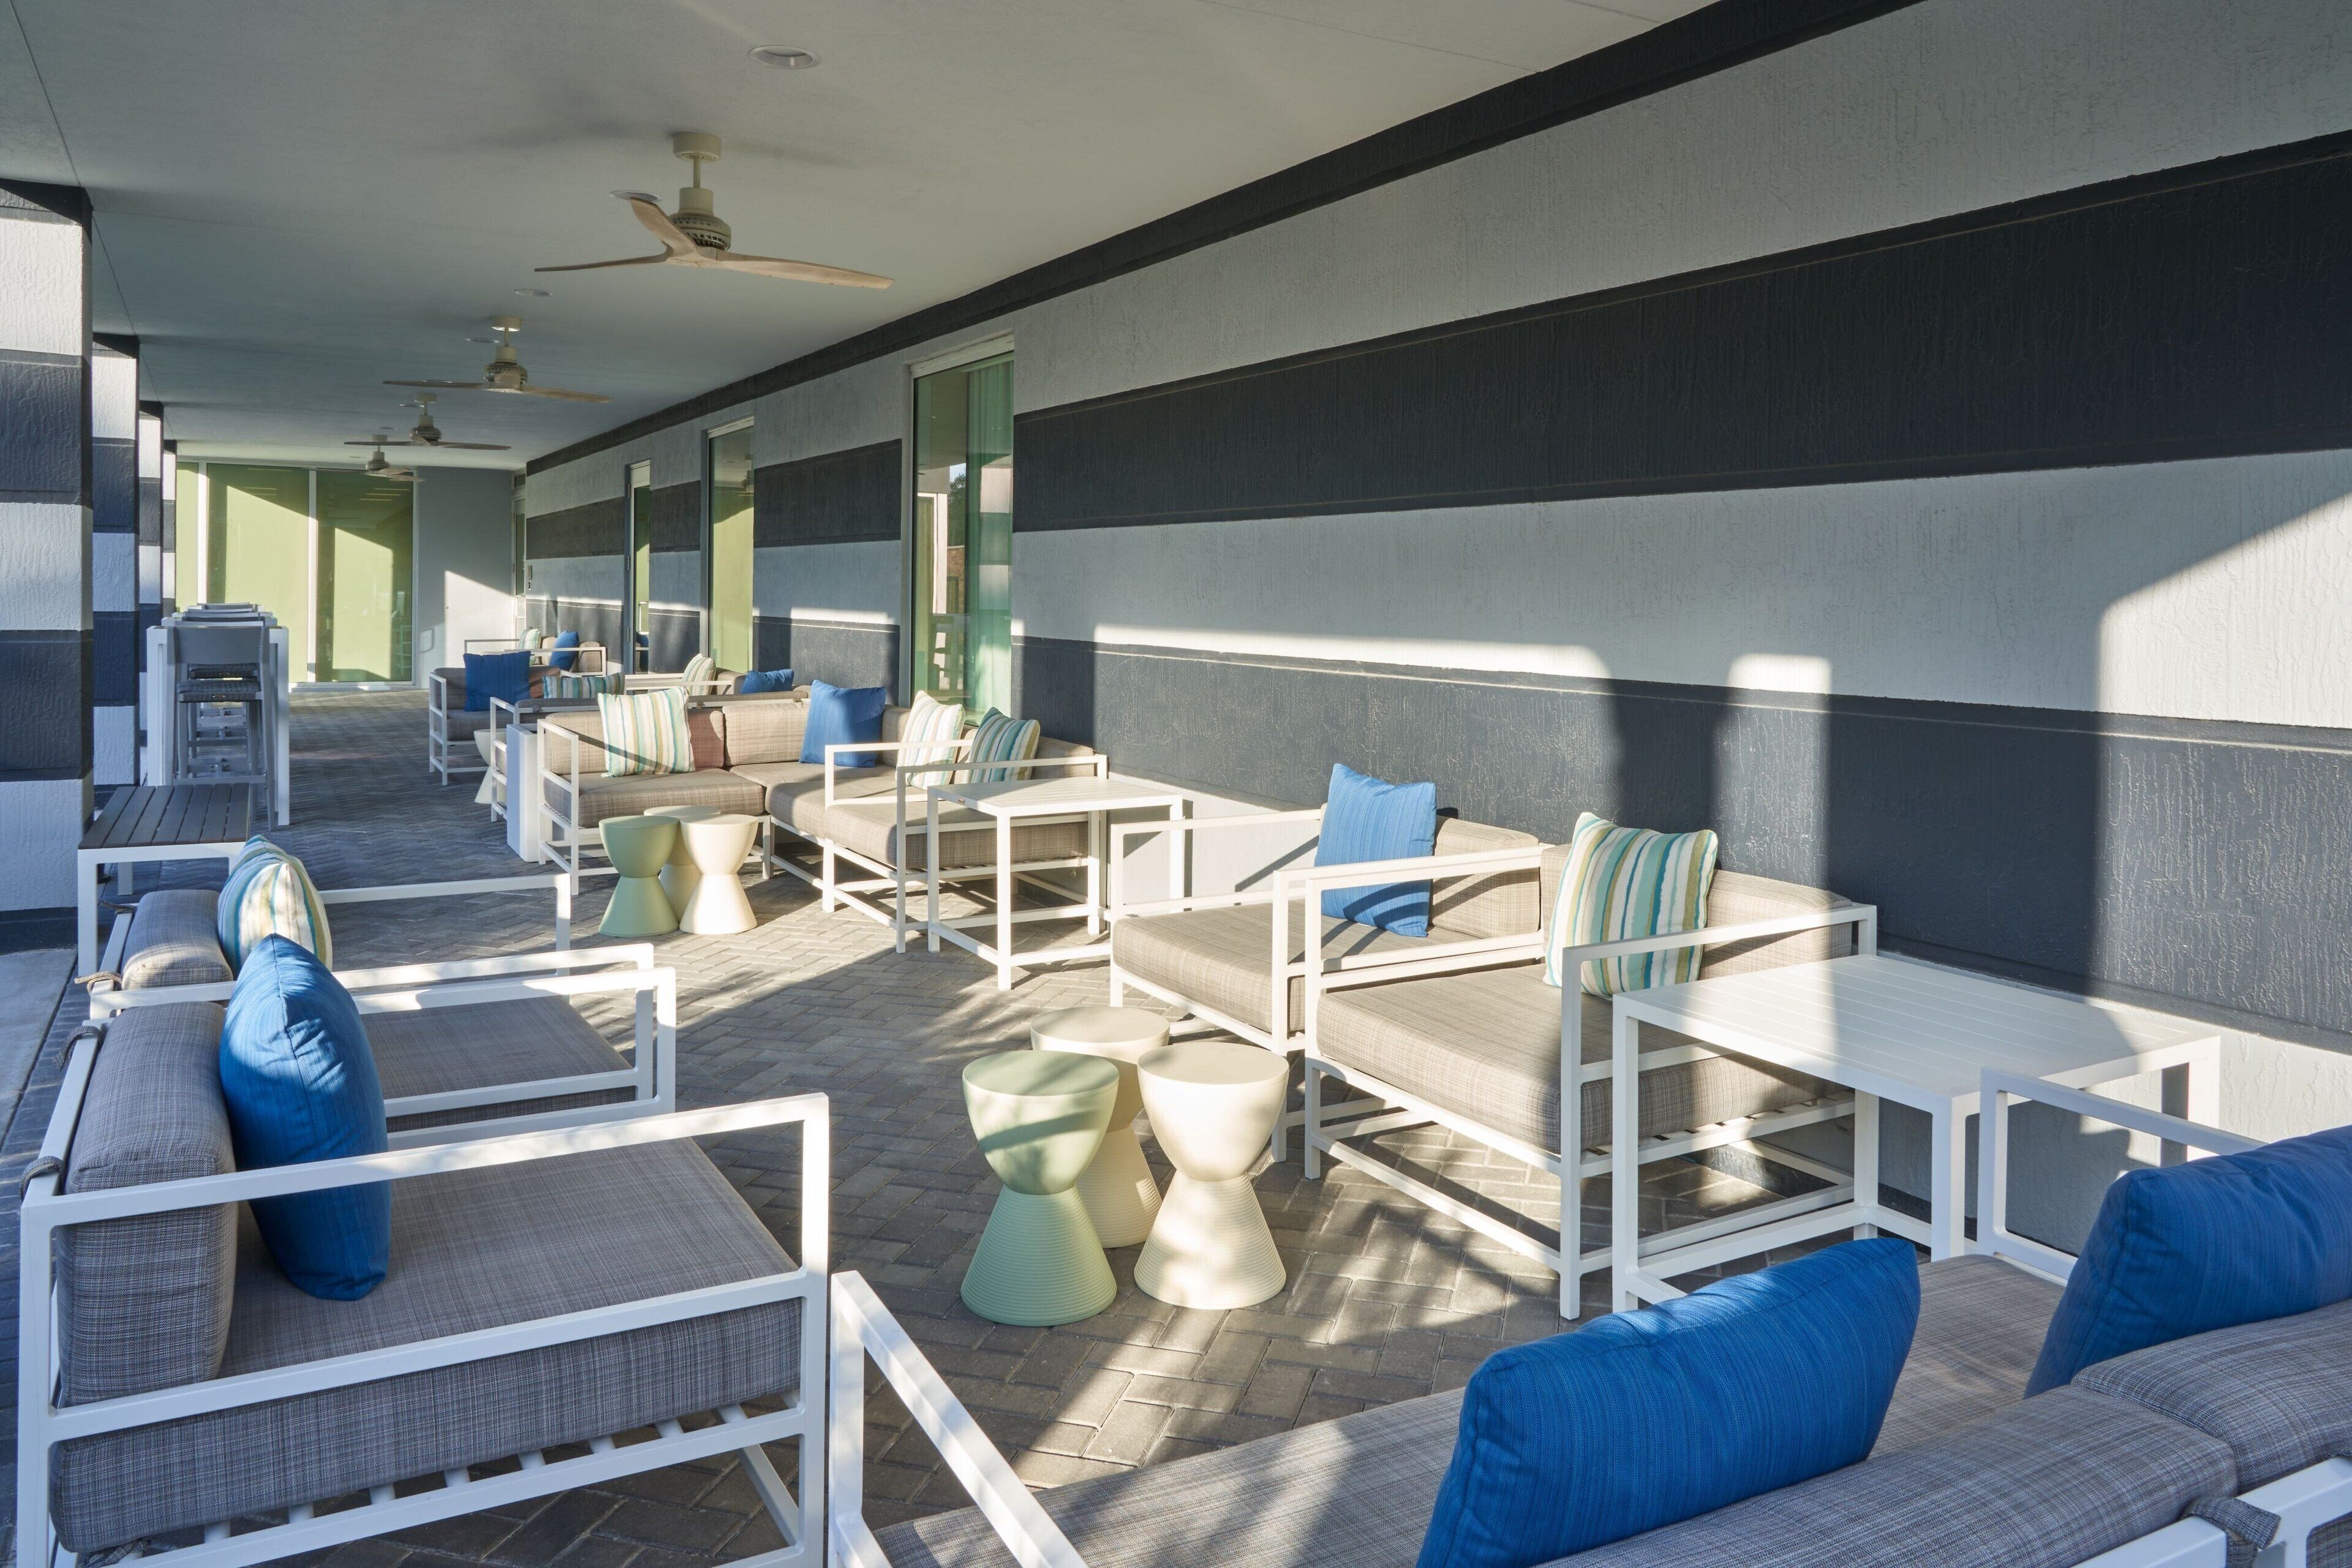 Fairfield Inn & Suites West Palm Beach